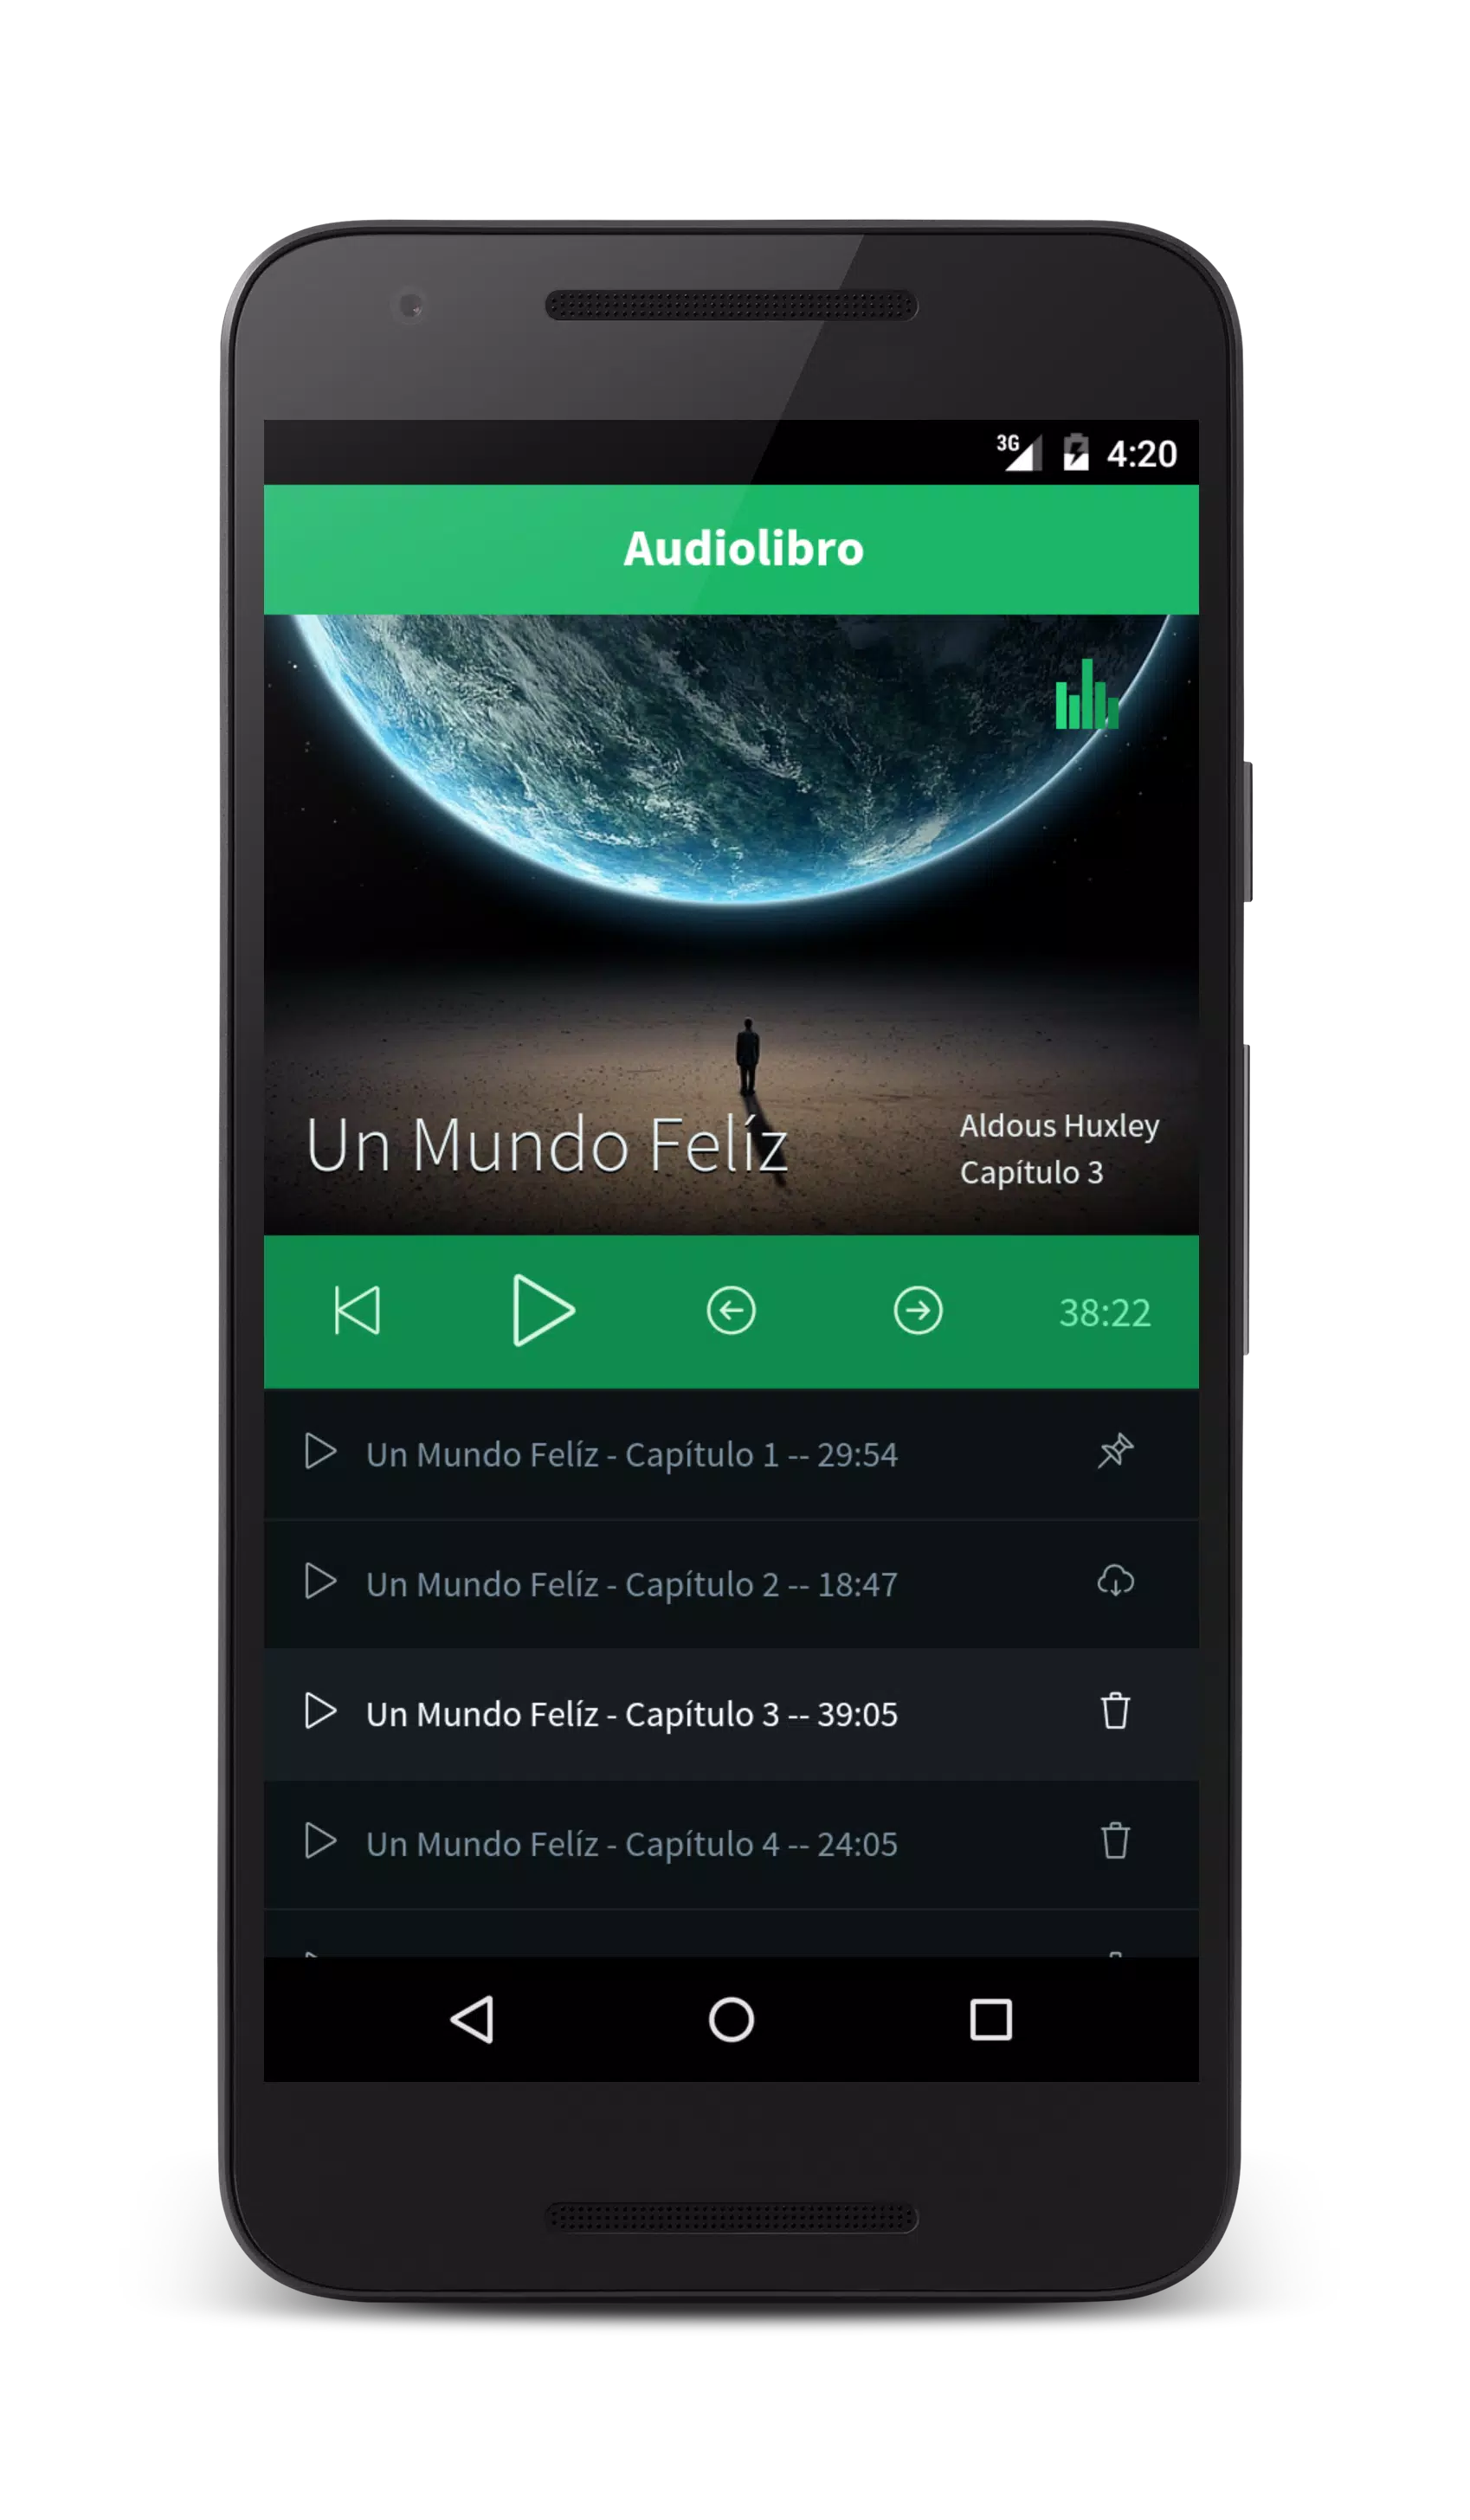 Un Mundo Feliz, El Audiolibro for Android - APK Download